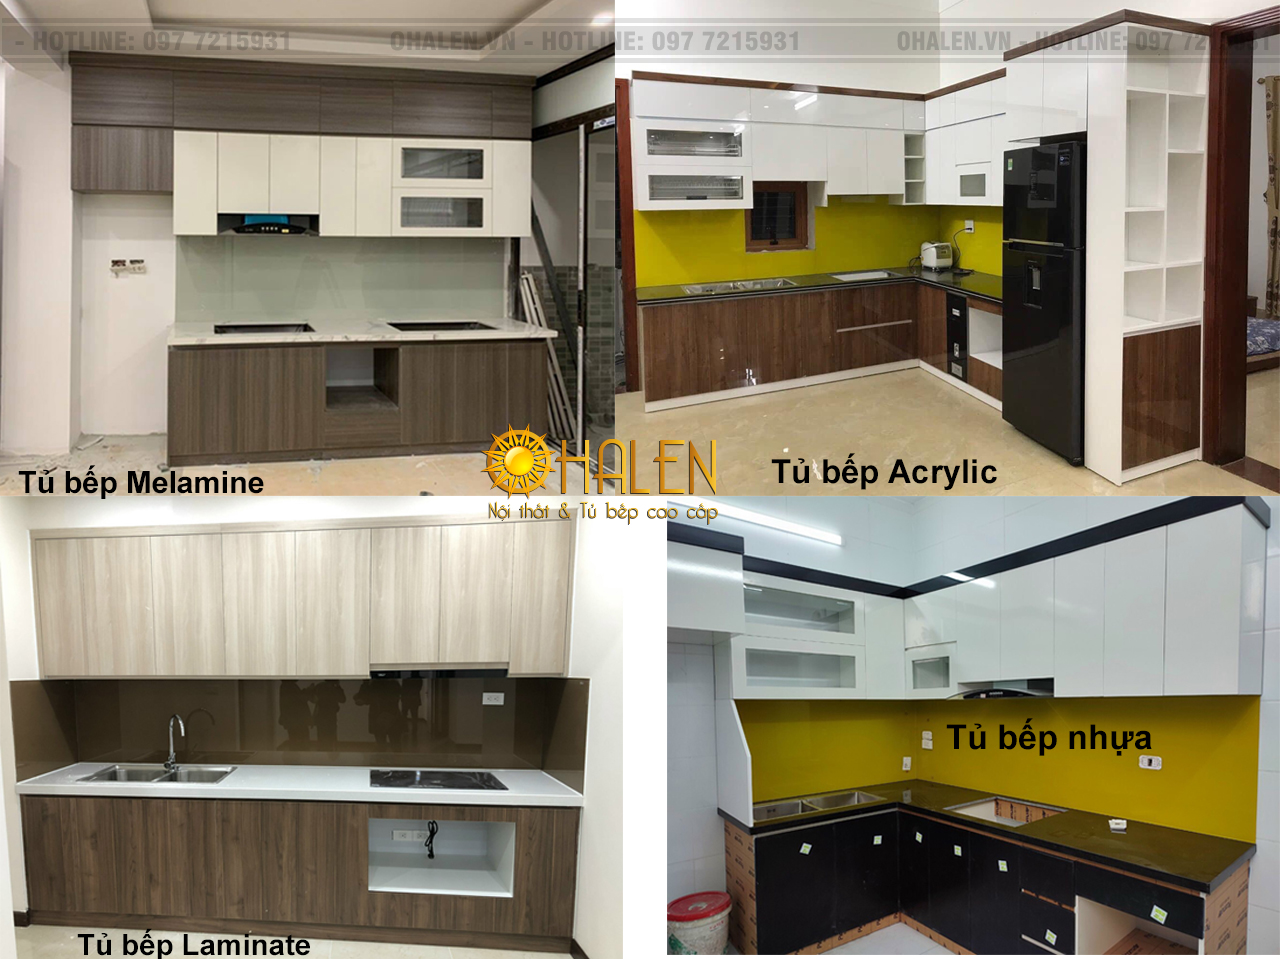 Hình ảnh 4 loại tủ bếp gỗ công nghiệp - nội thất OHALEN